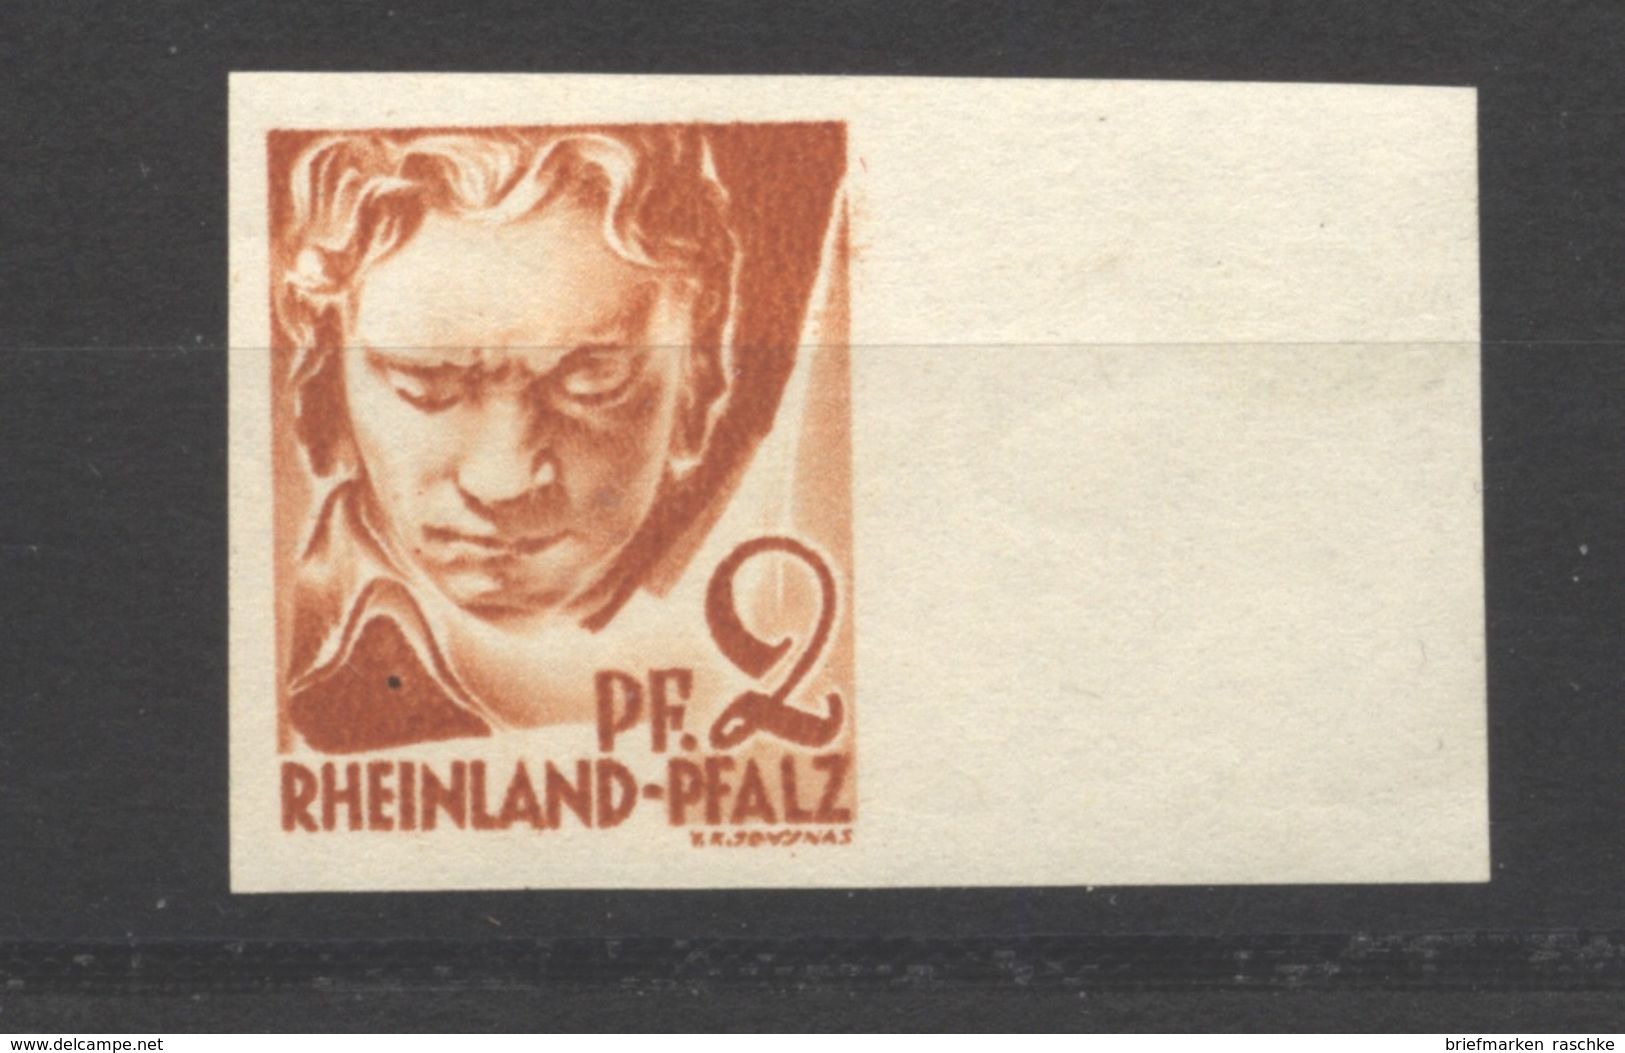 Rheinland-Pfalz,16 U,xx (5290) - Rheinland-Pfalz